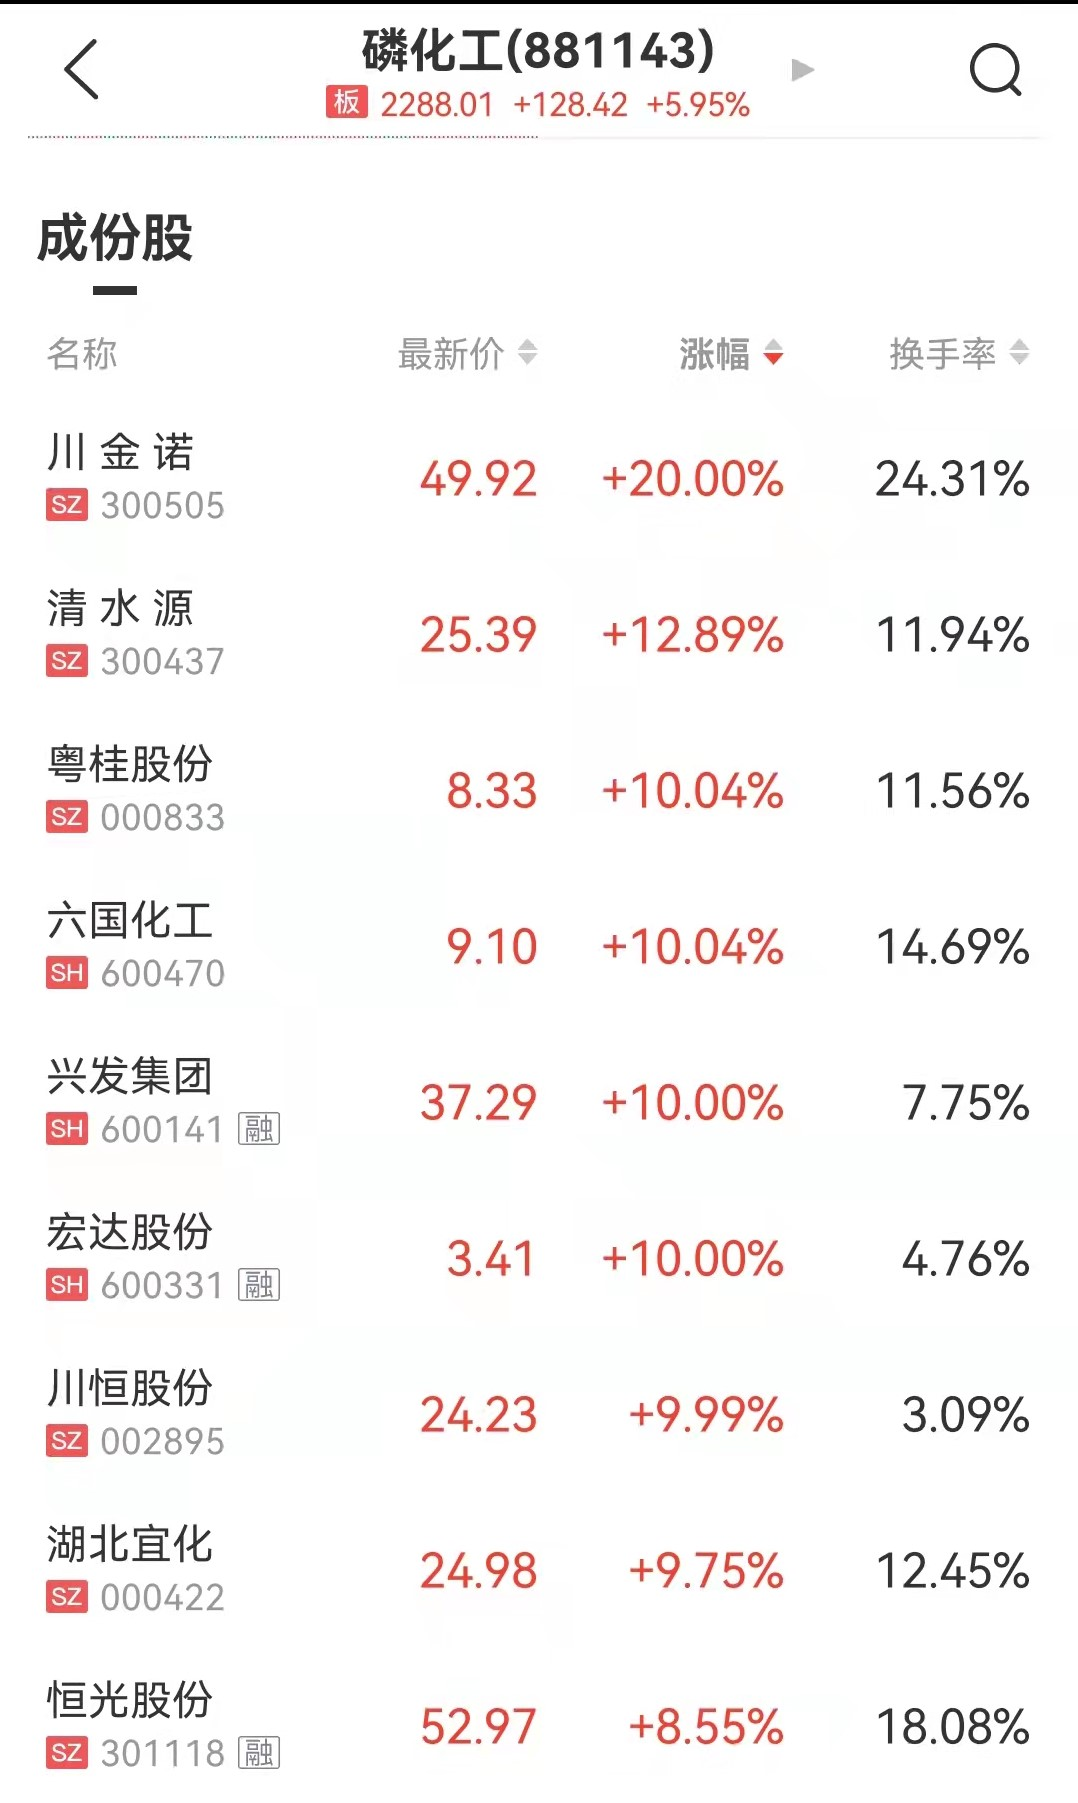 房地产板块回调趋势 中国武夷连续6个交易日涨停11天股价翻倍 